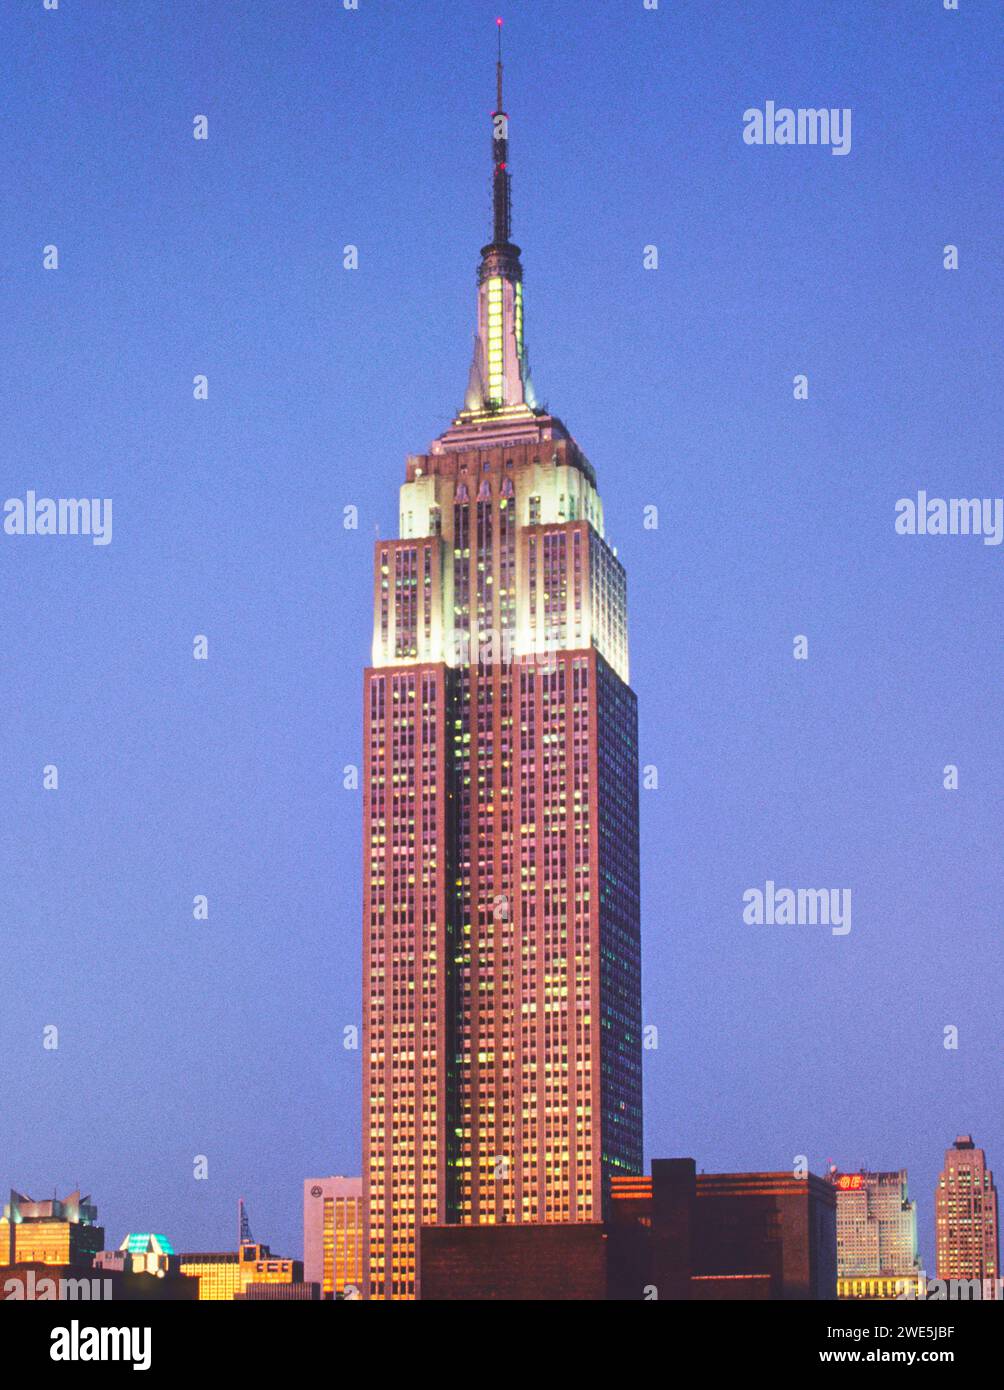 Empire State Building à New York Midtown Manhattan. Gratte-ciel immeuble de bureaux tour la nuit New York City USA Banque D'Images